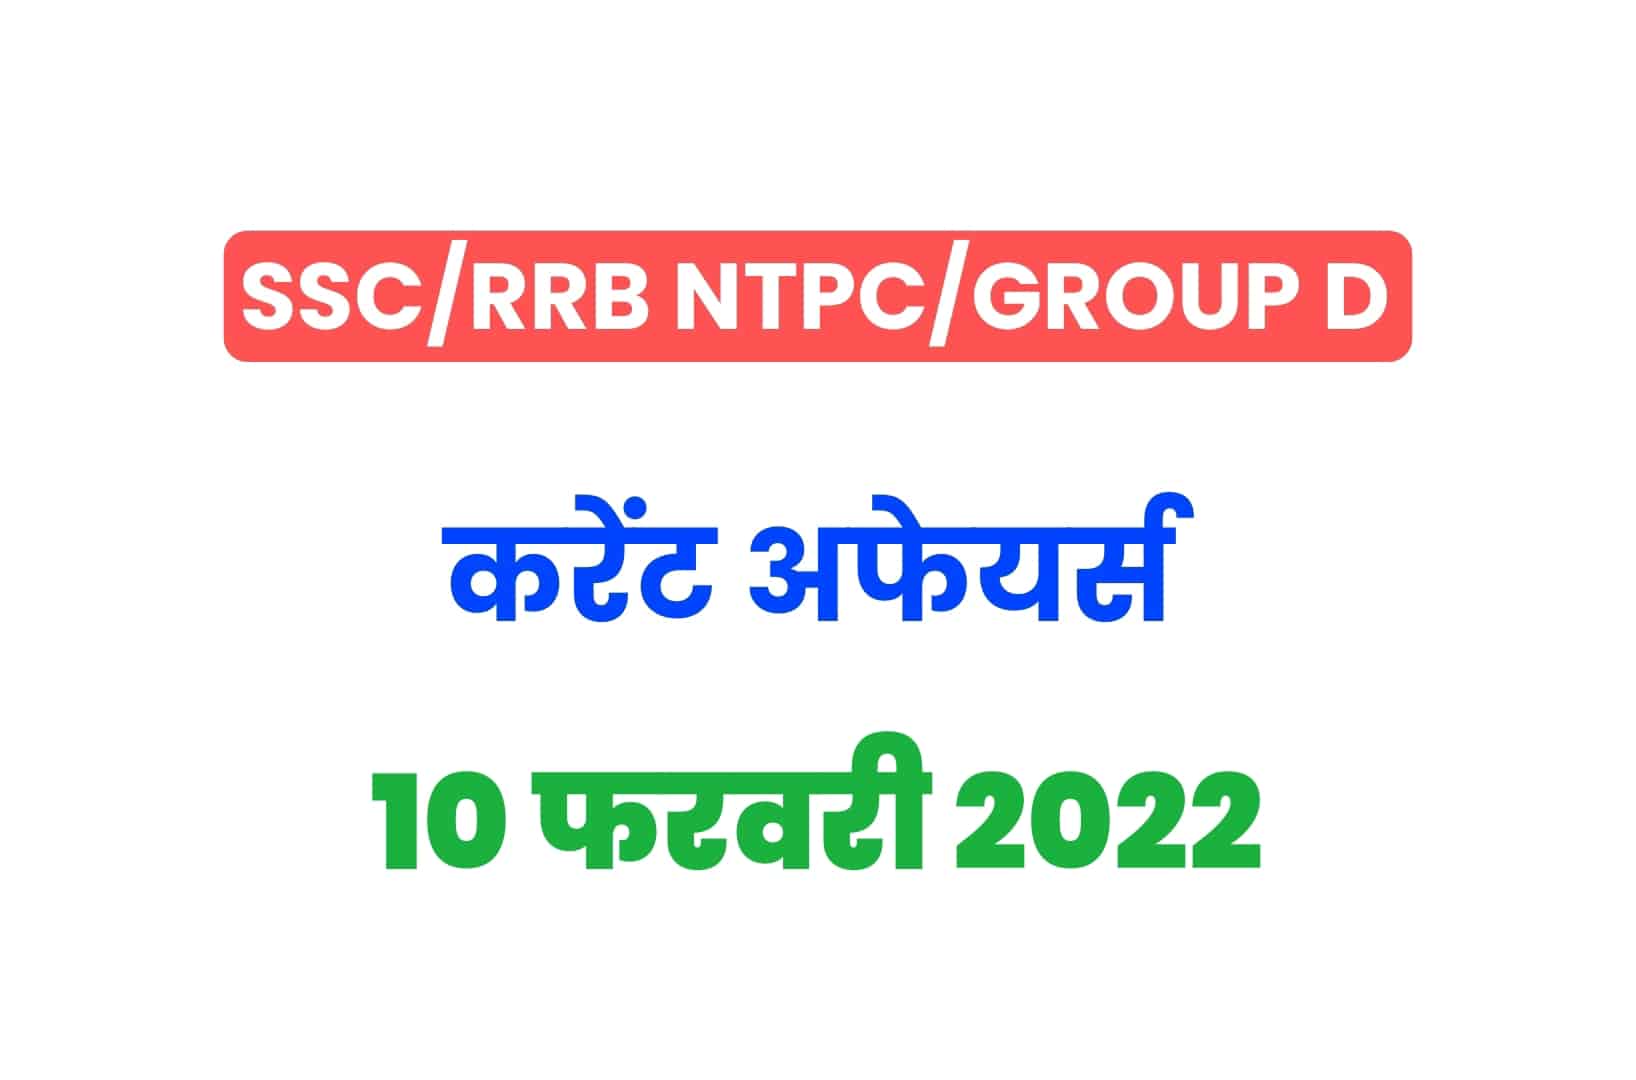 SSC/RRB Group D/NTPC Exam 2022: 10 फरवरी के 15 महत्वपूर्ण करेंट अफेयर्स के प्रश्न, जरूर पढ़ें